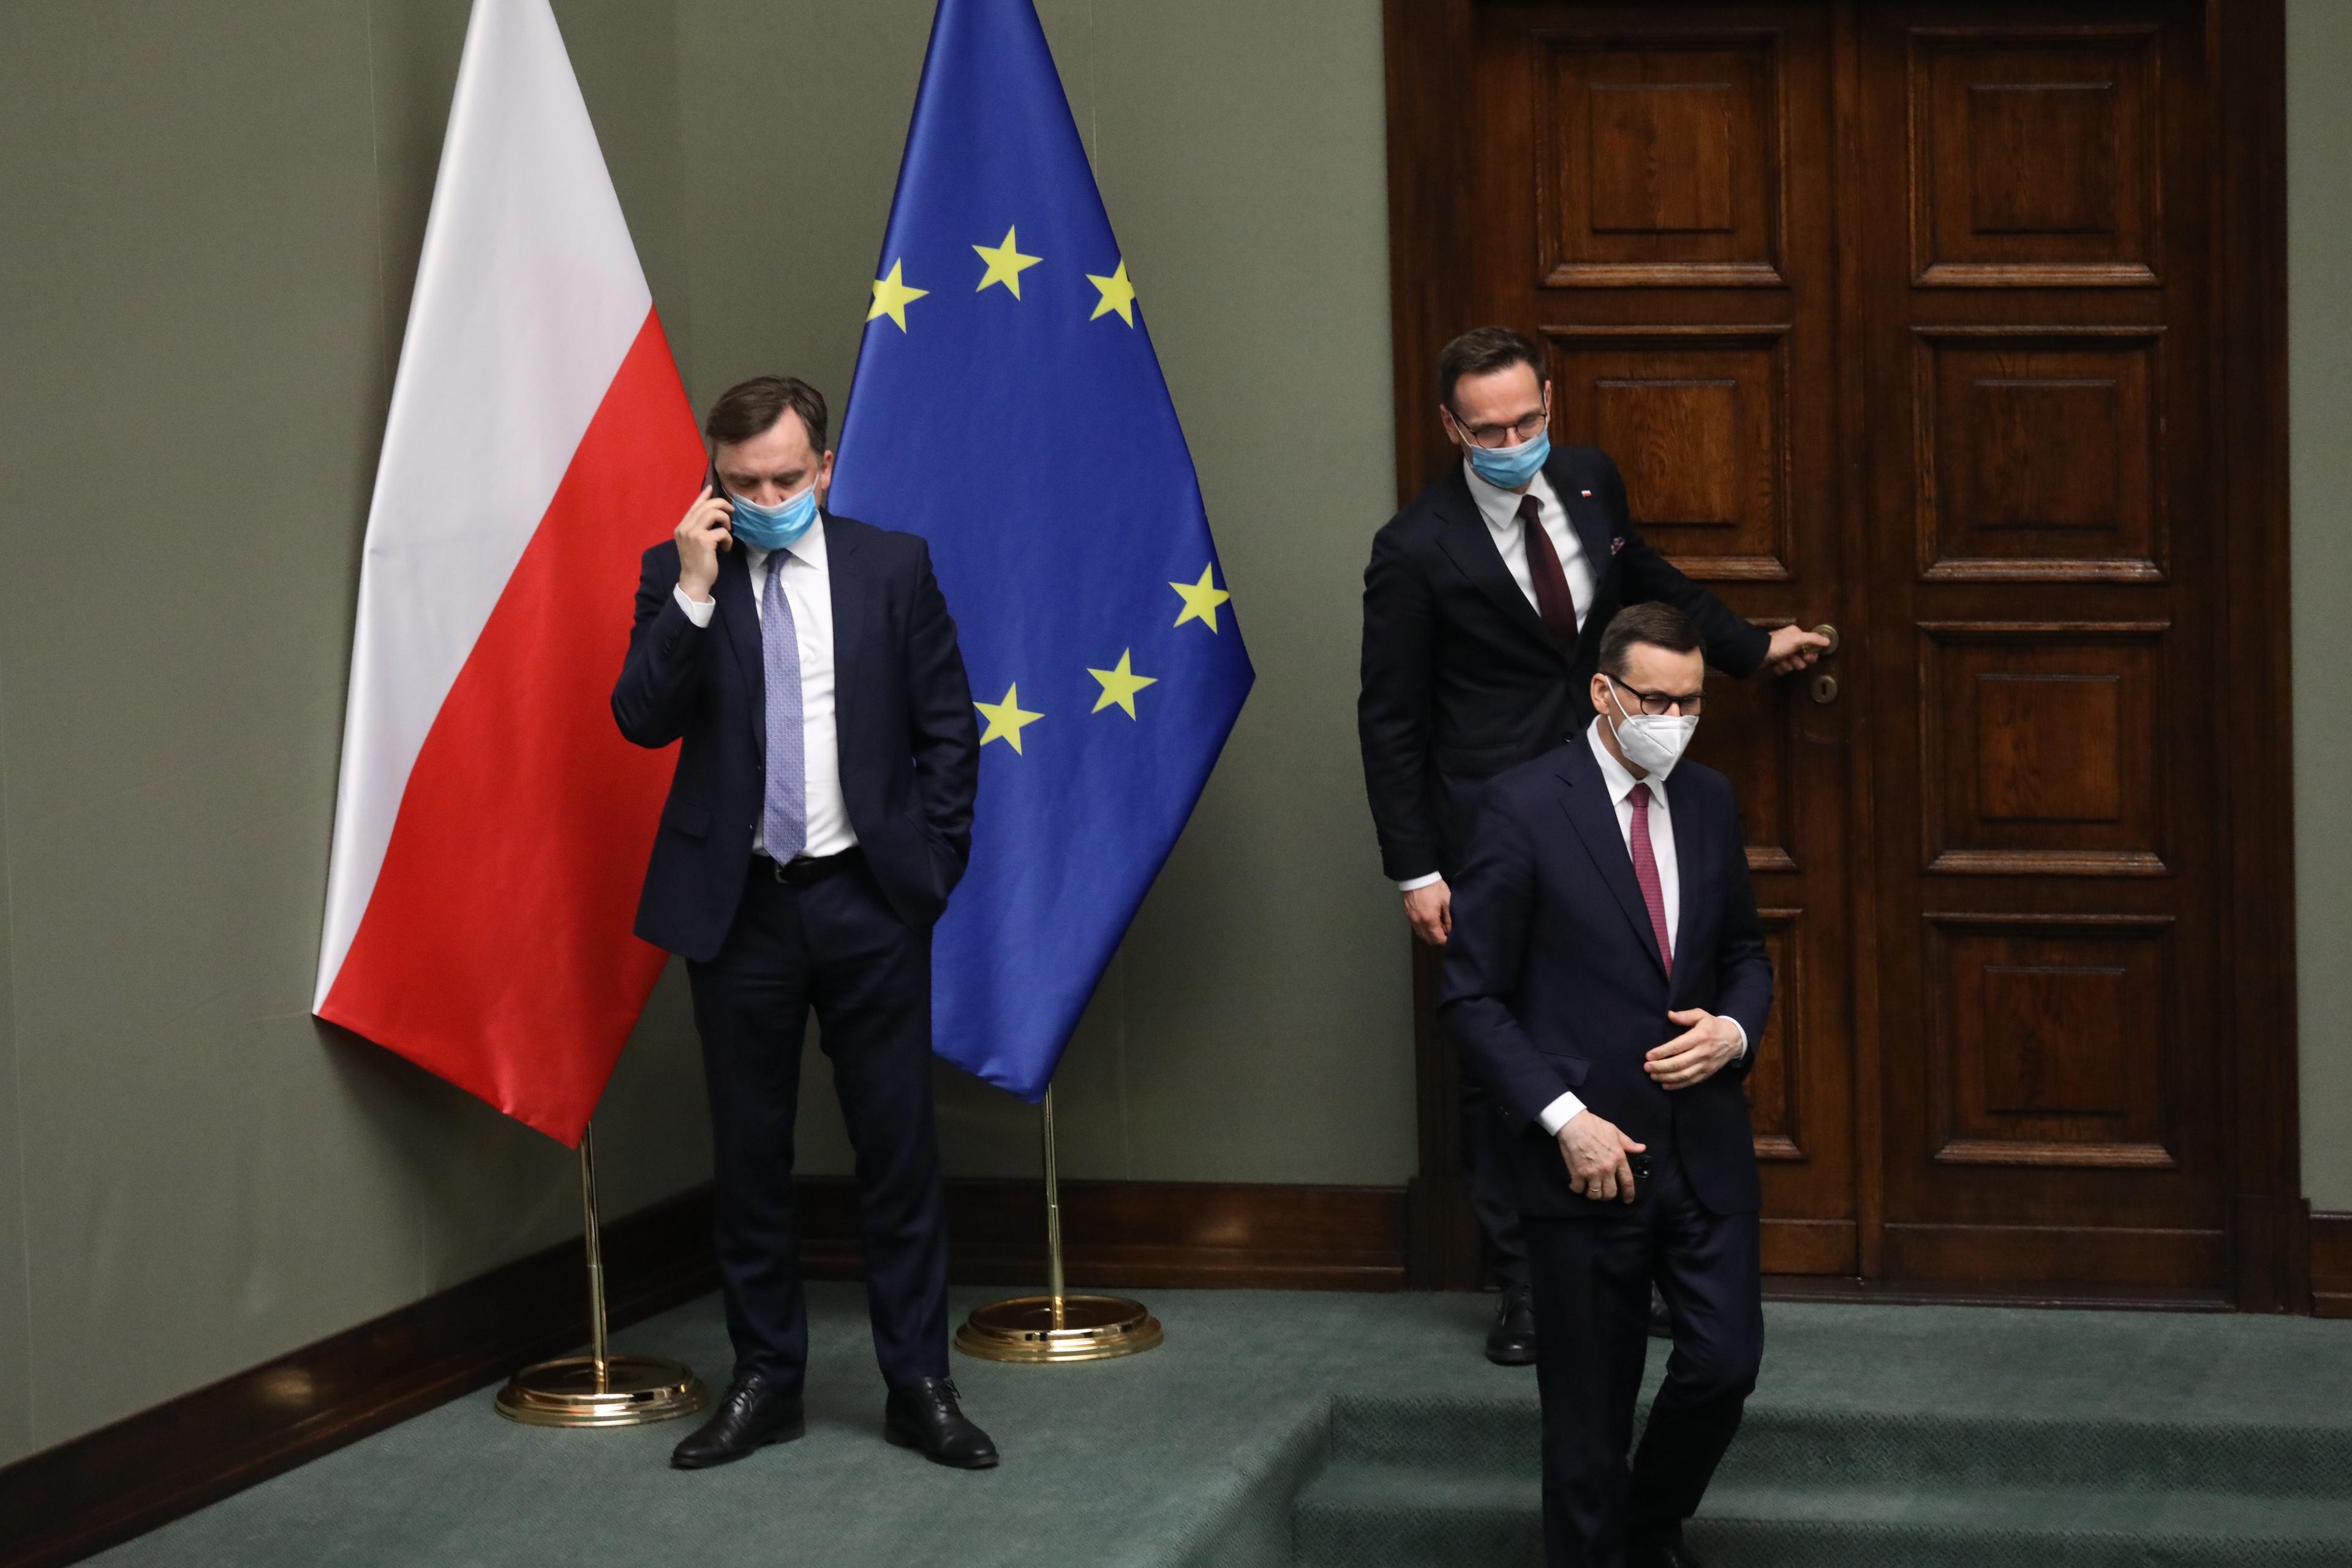 Zbigniew Ziobro w maseczce rozmawia przez telefon komórkowy w Sejmie, stojąc koło flagi Polski i Unii Europelskiej. Obok przechodzi premier Morawiecki, też w maseczce